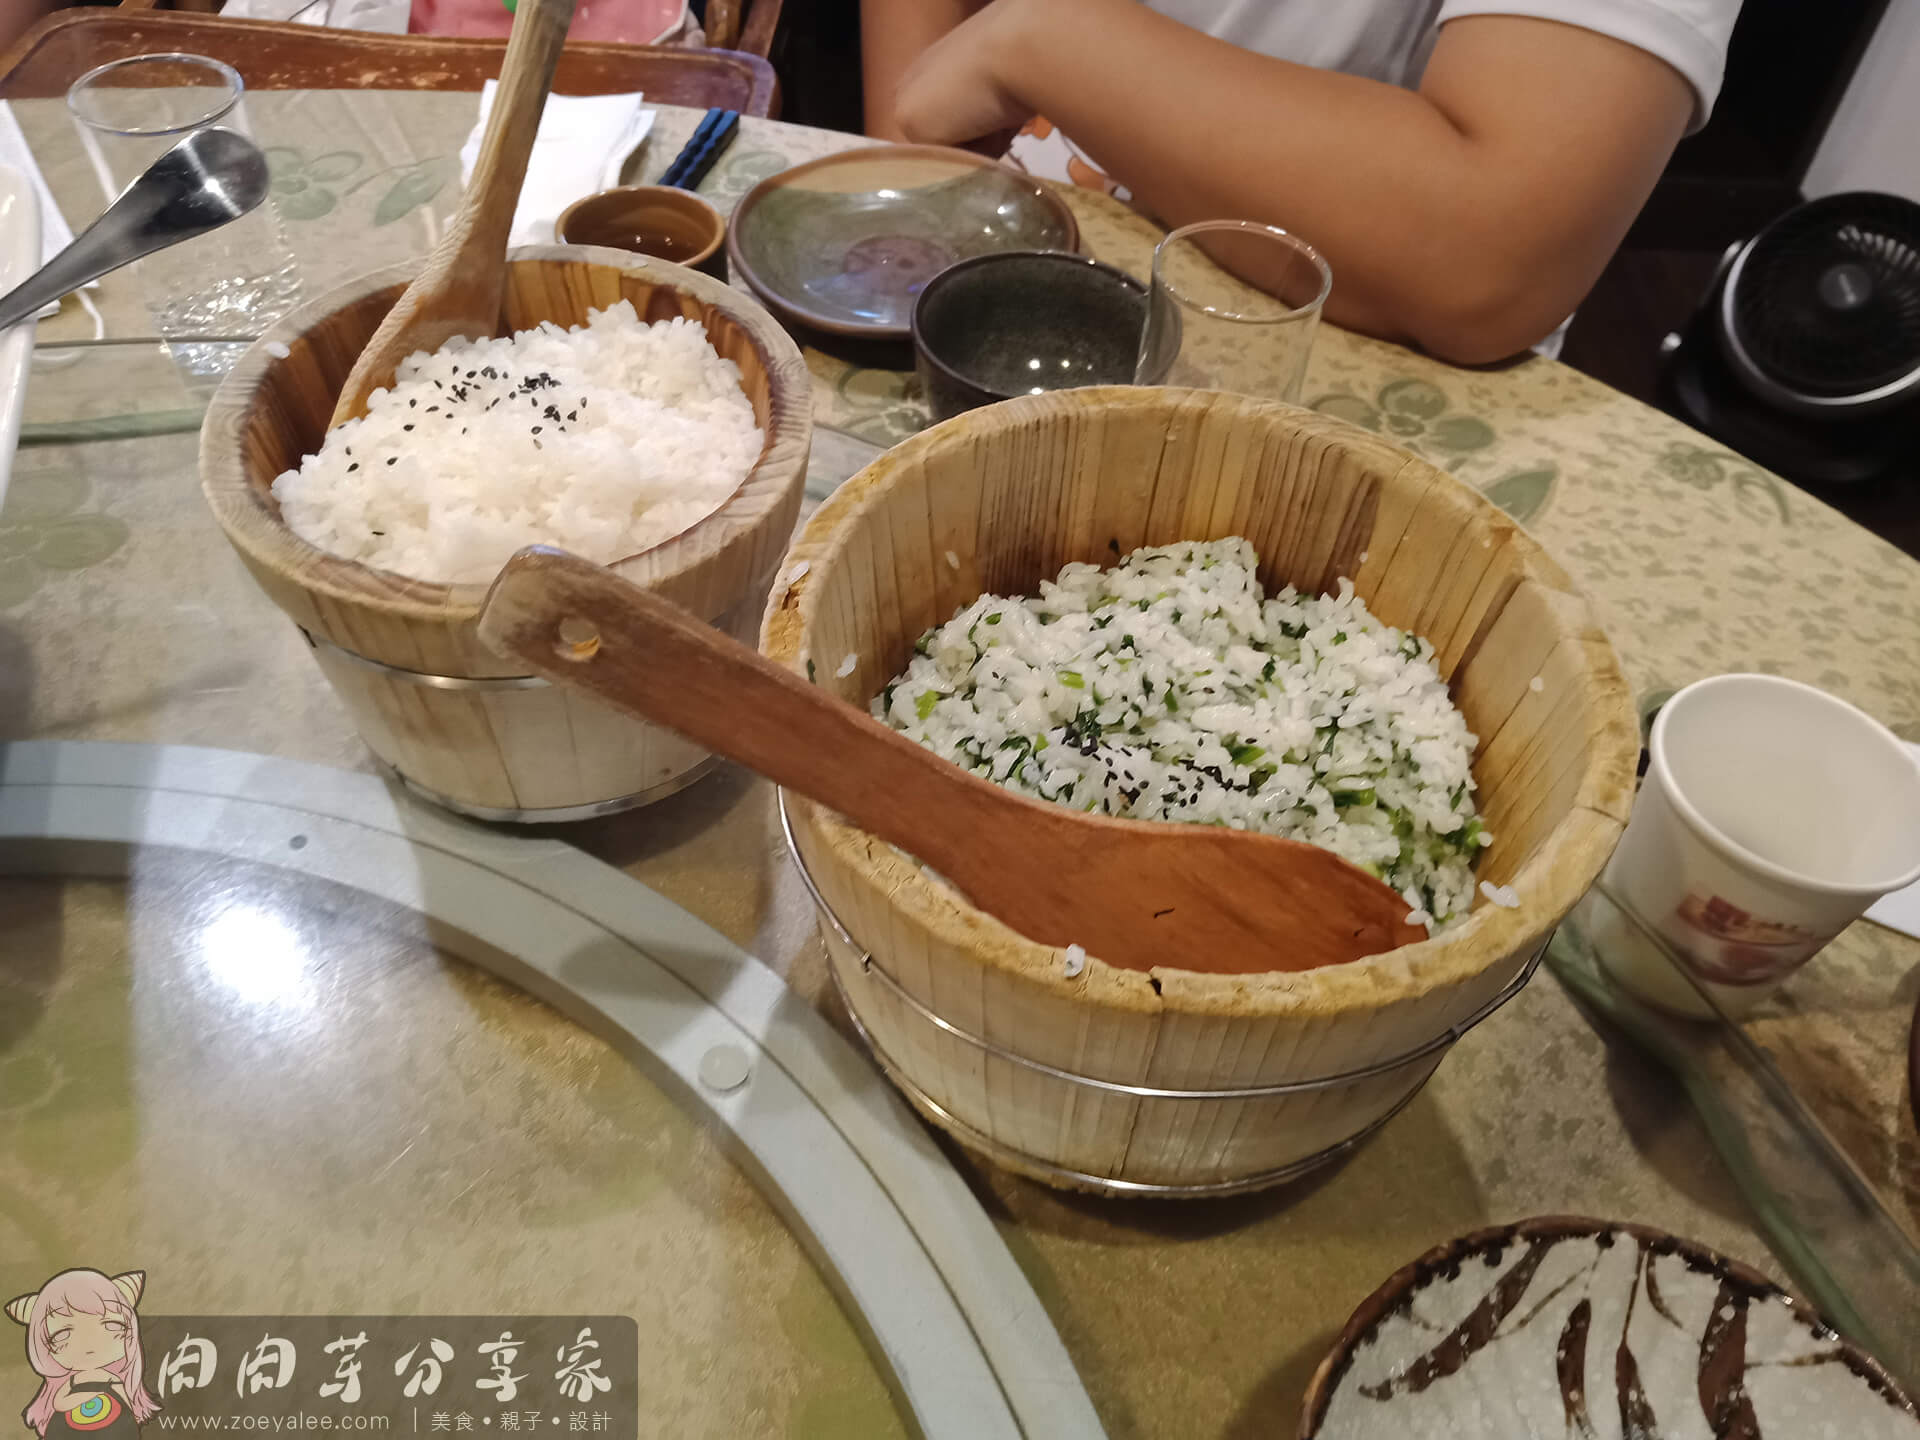 桃園龍潭美食-壹等賞景觀茶園餐廳菜飯與白飯